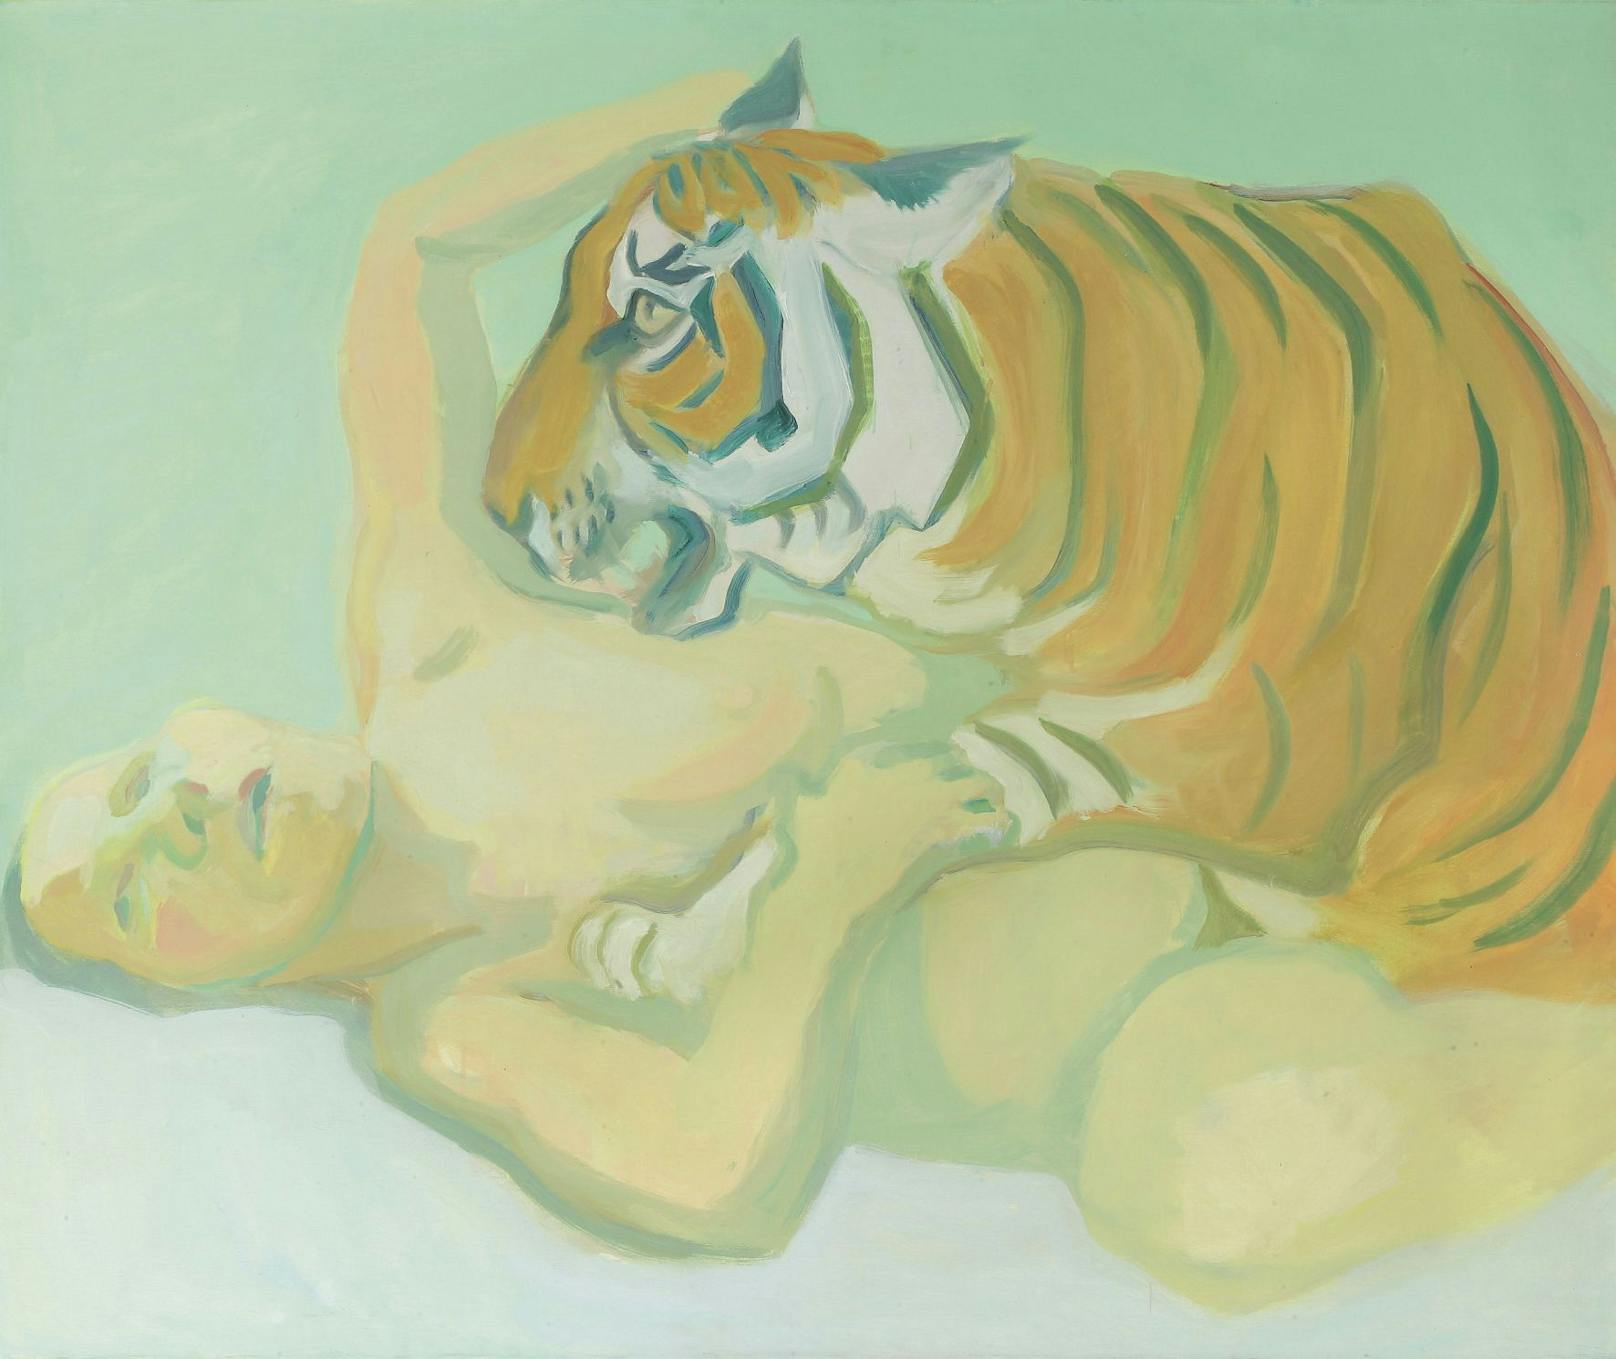 Ebenfalls in der Schau zu sehen: "Mit einem Tiger schlafen", von Maria Lassnig